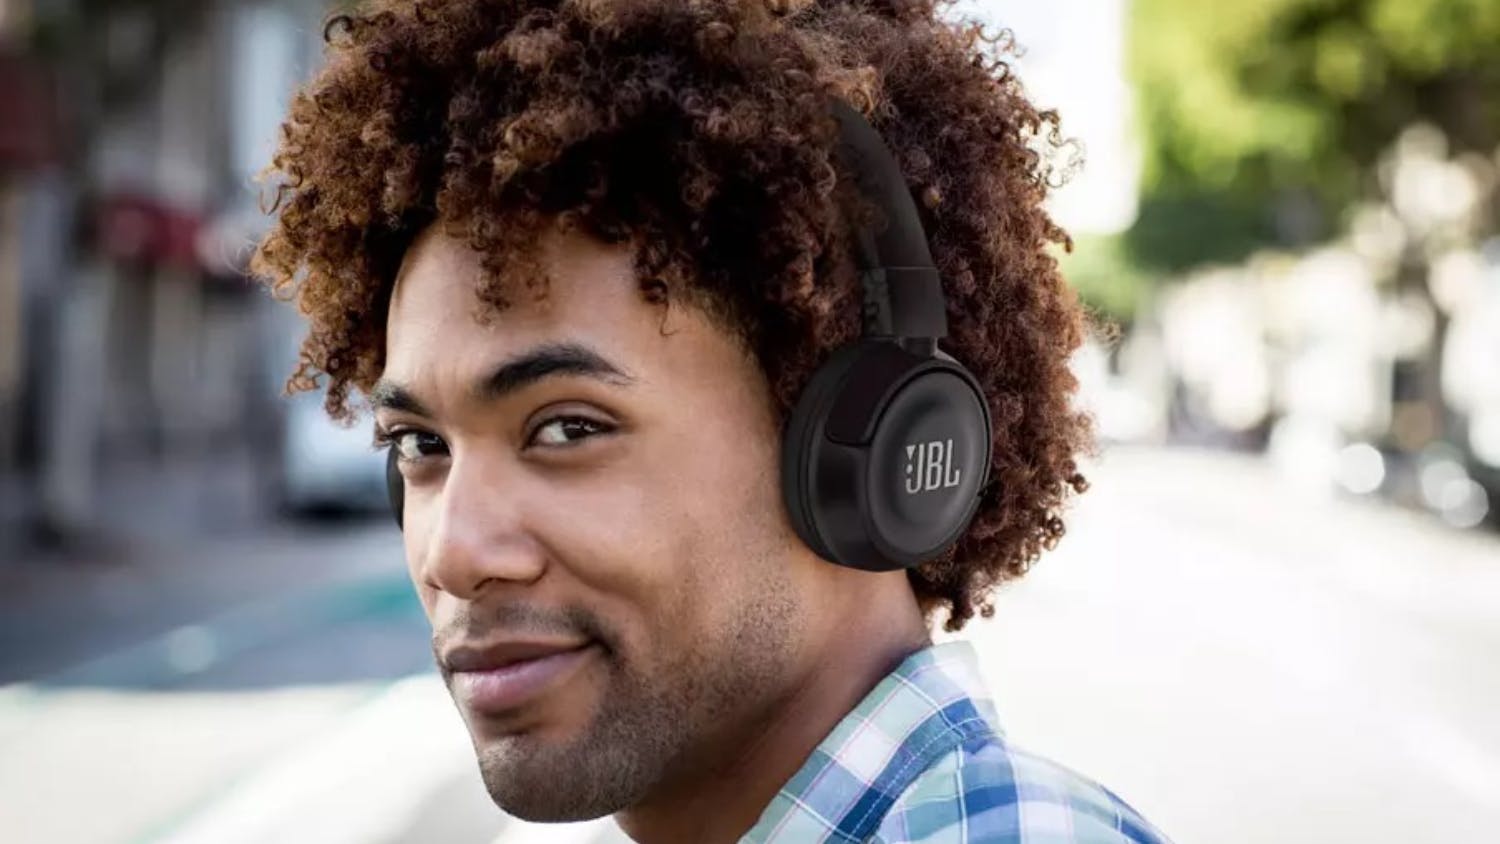 JBL T450 Wireless On-Ear Headphones